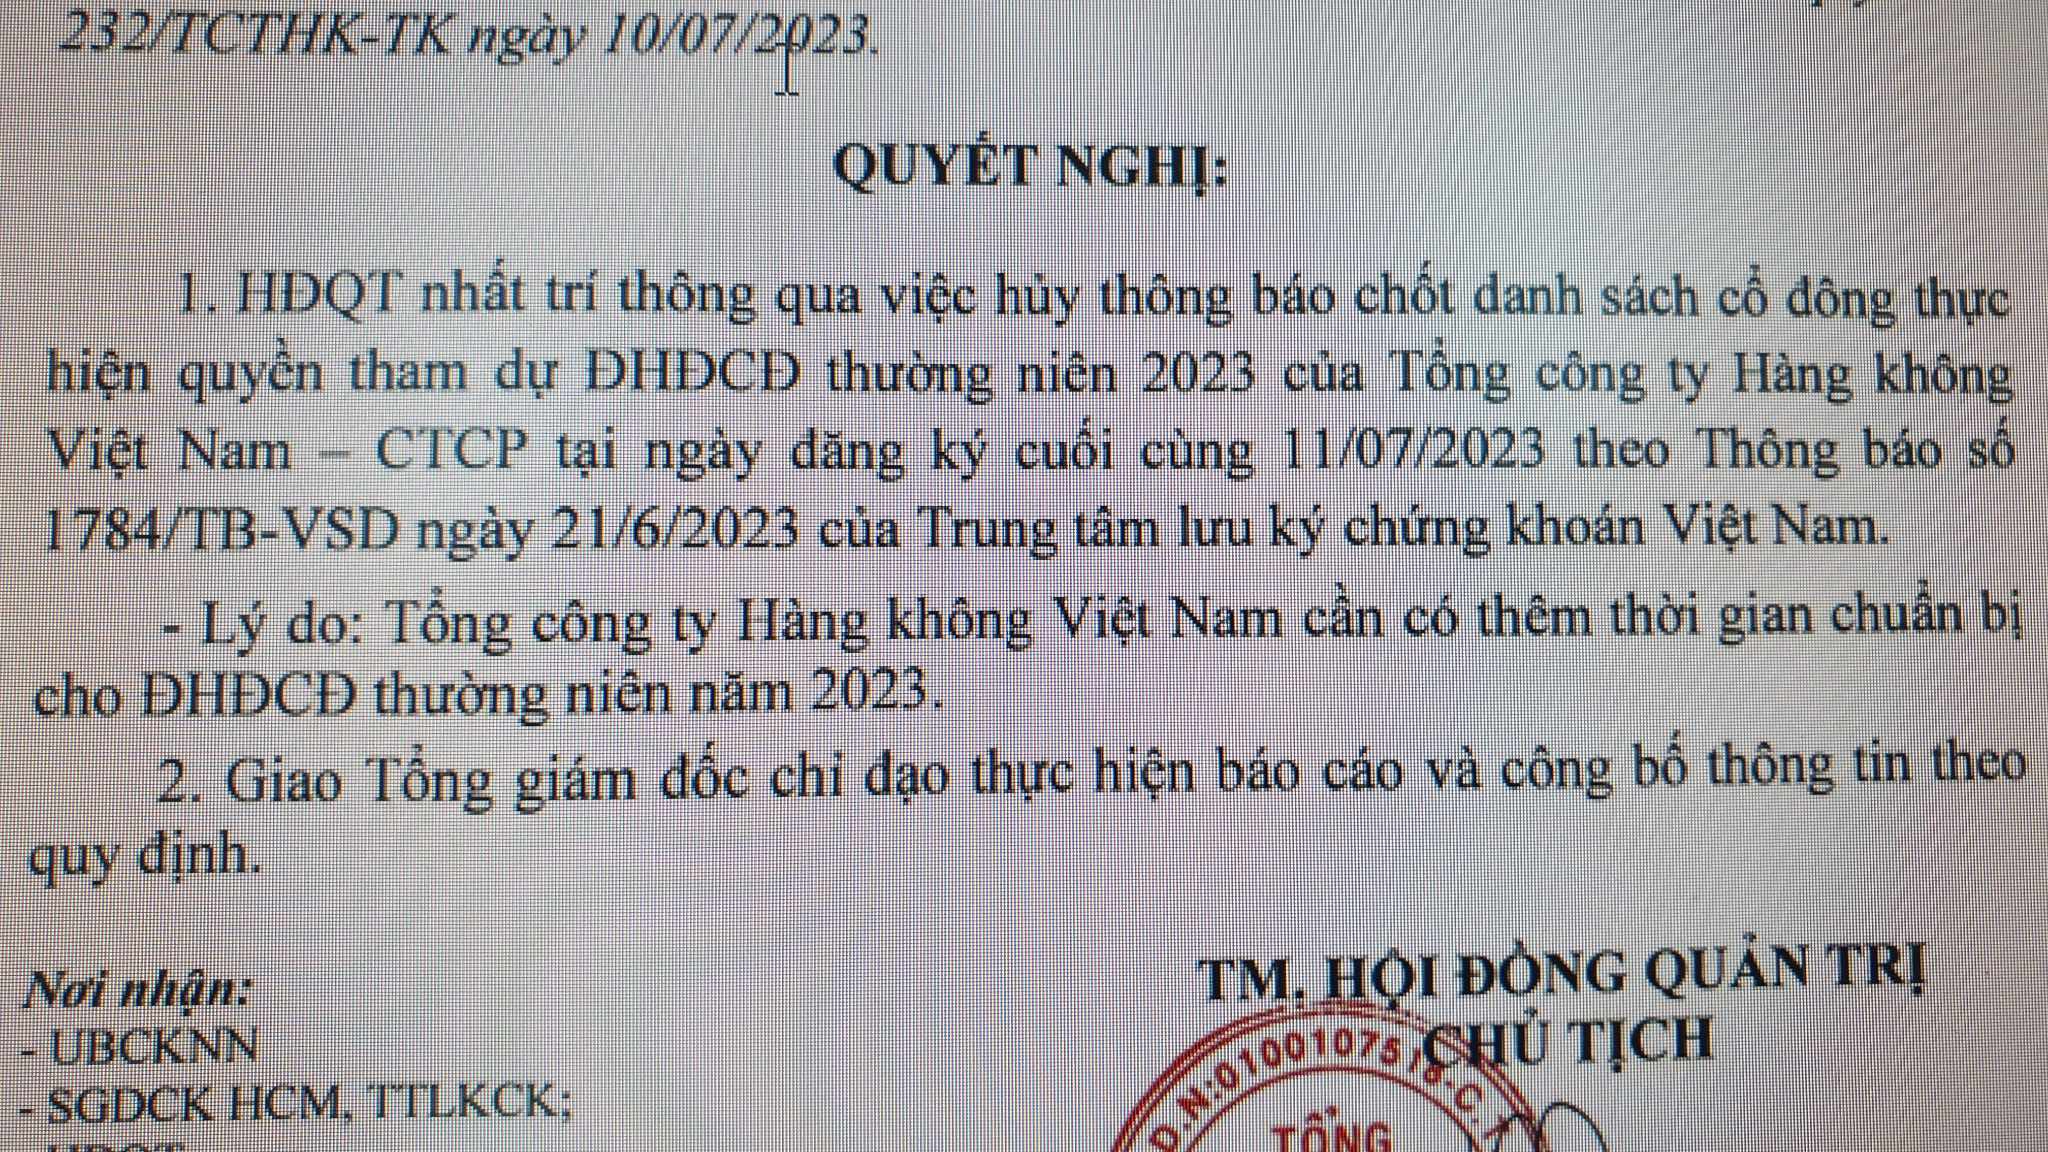 Vietnam Airlines bất ngờ hủy chốt danh sách cổ đông tham dự ĐHCĐ thường niên năm 2023 - Ảnh 1.